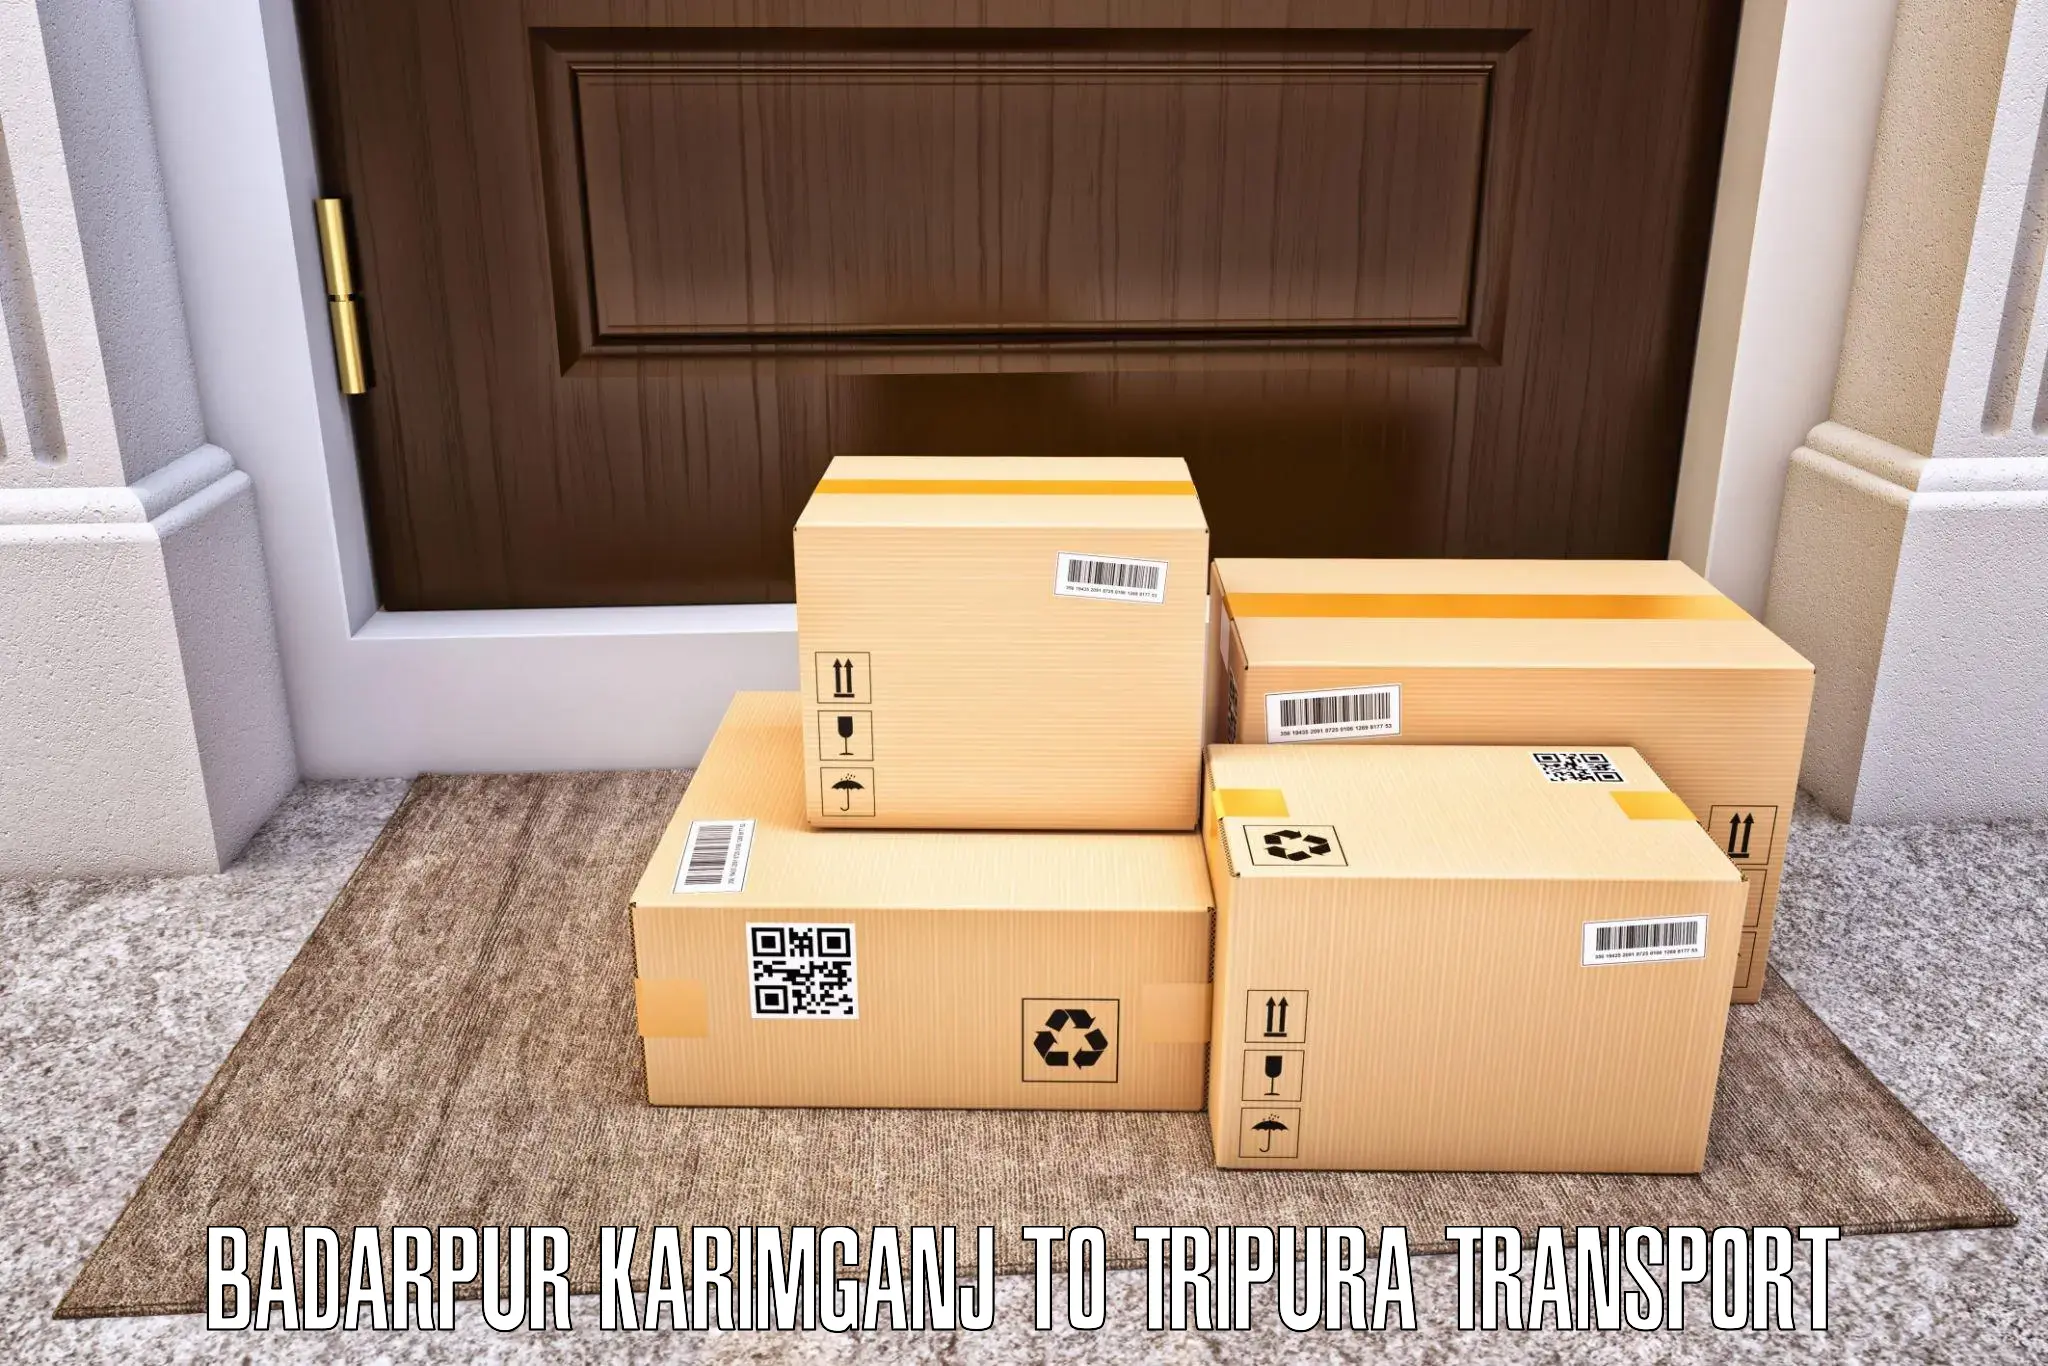 Cargo transportation services Badarpur Karimganj to Khowai